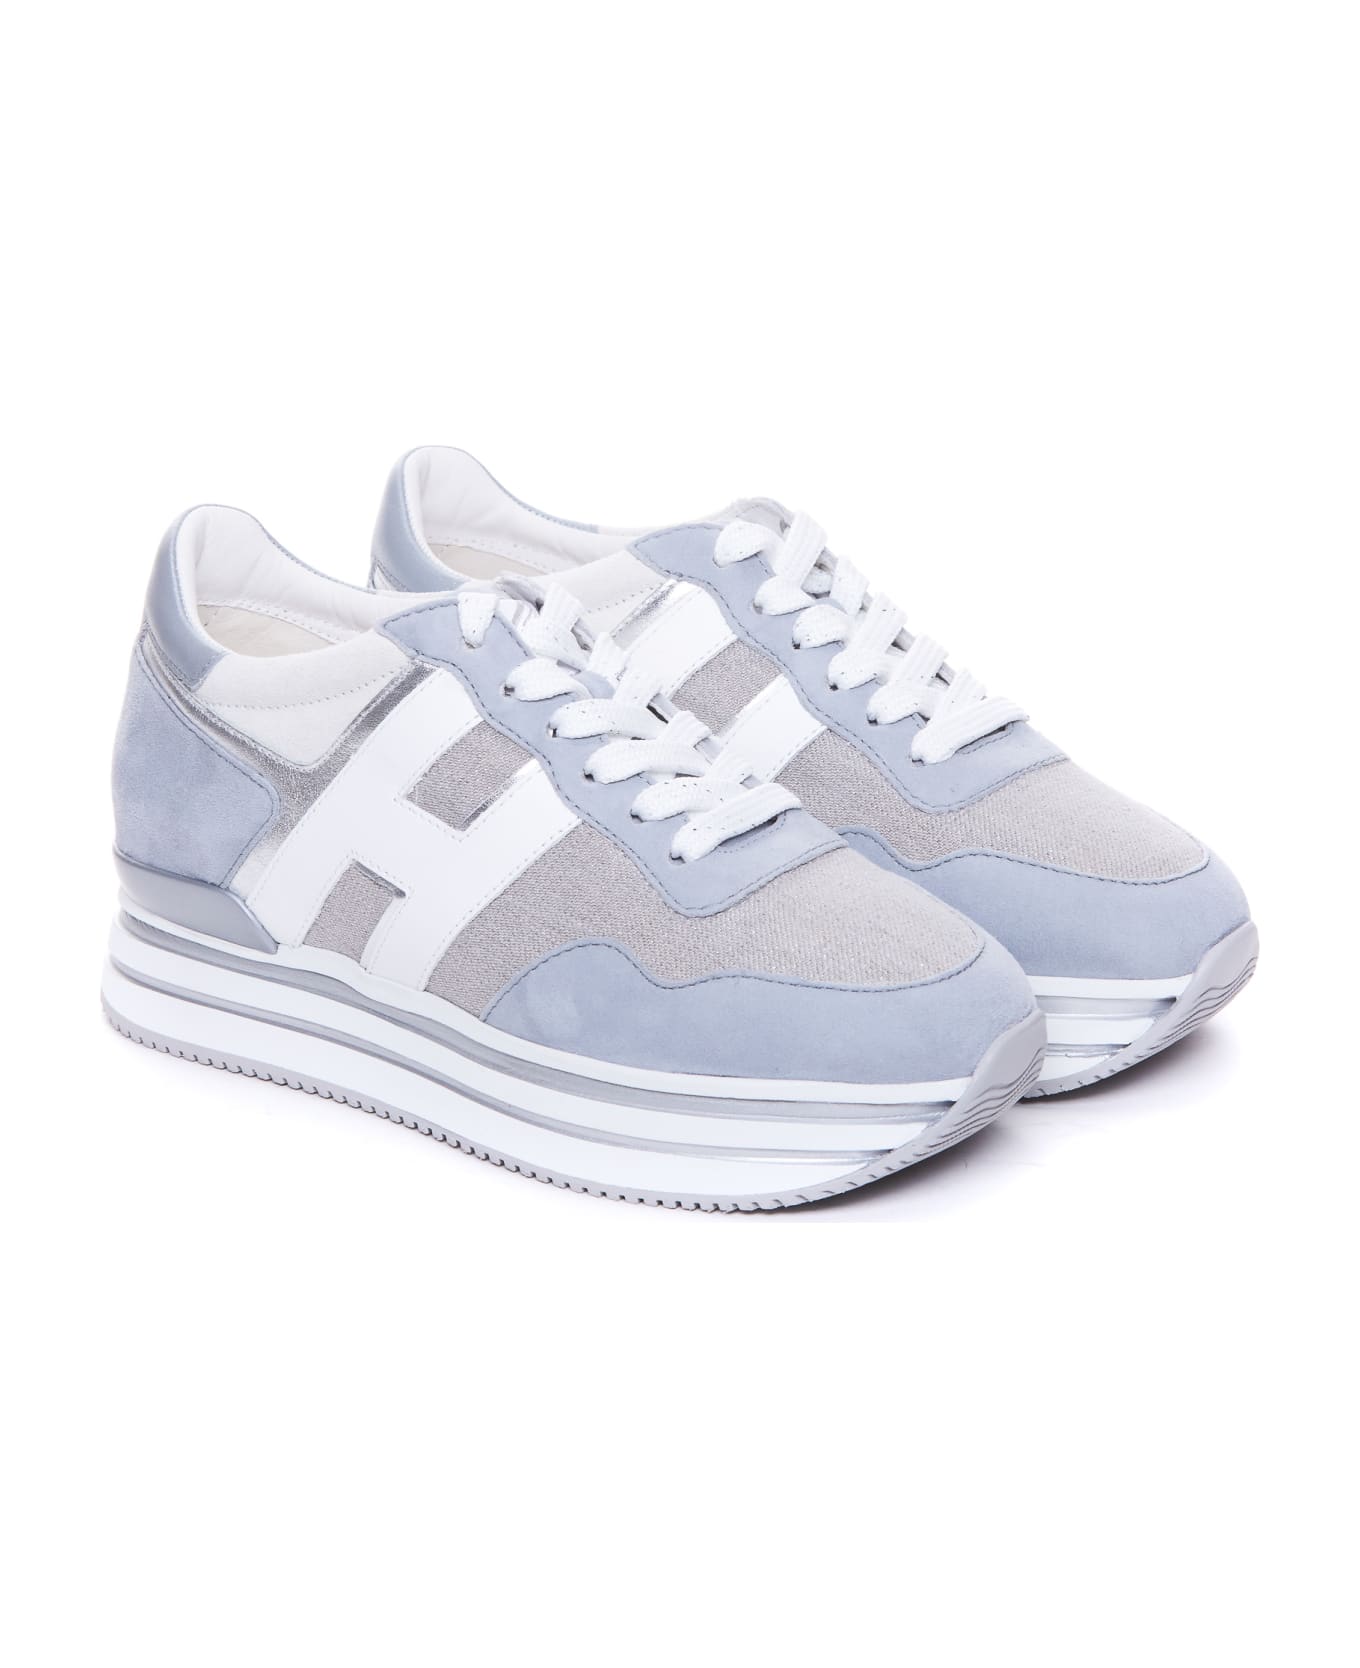 Hogan Midi H222 Sneakers - Grey